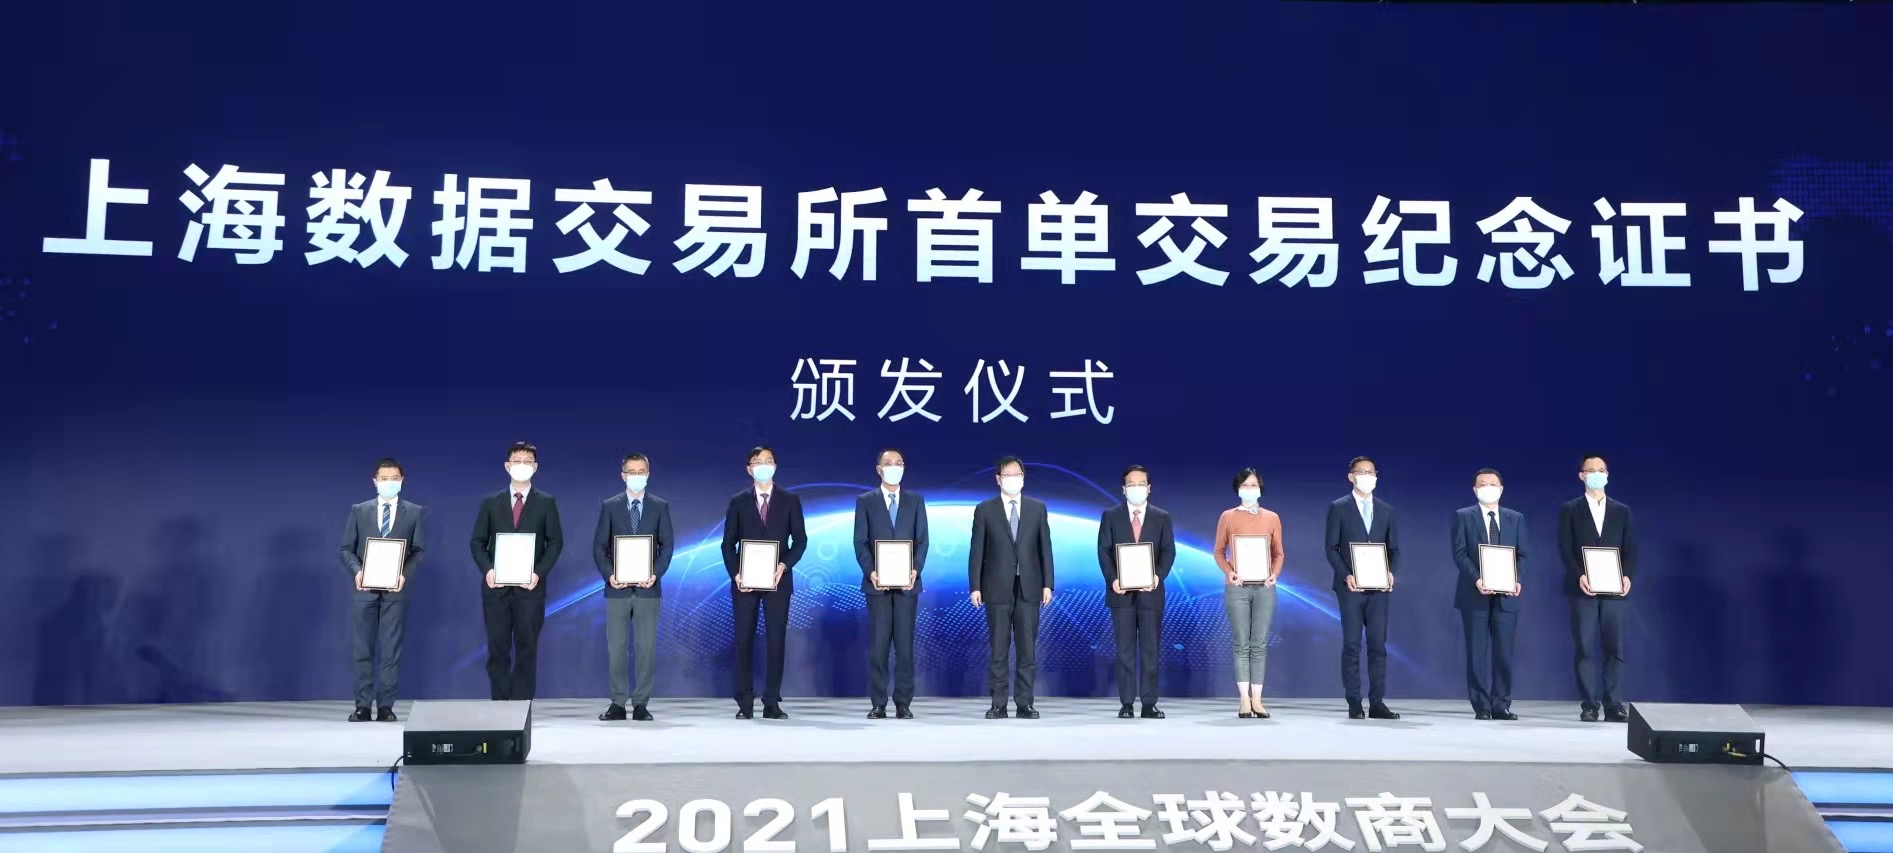 11月25日举行的上海数据交易所揭牌成立仪式暨2021上海全球数商大会